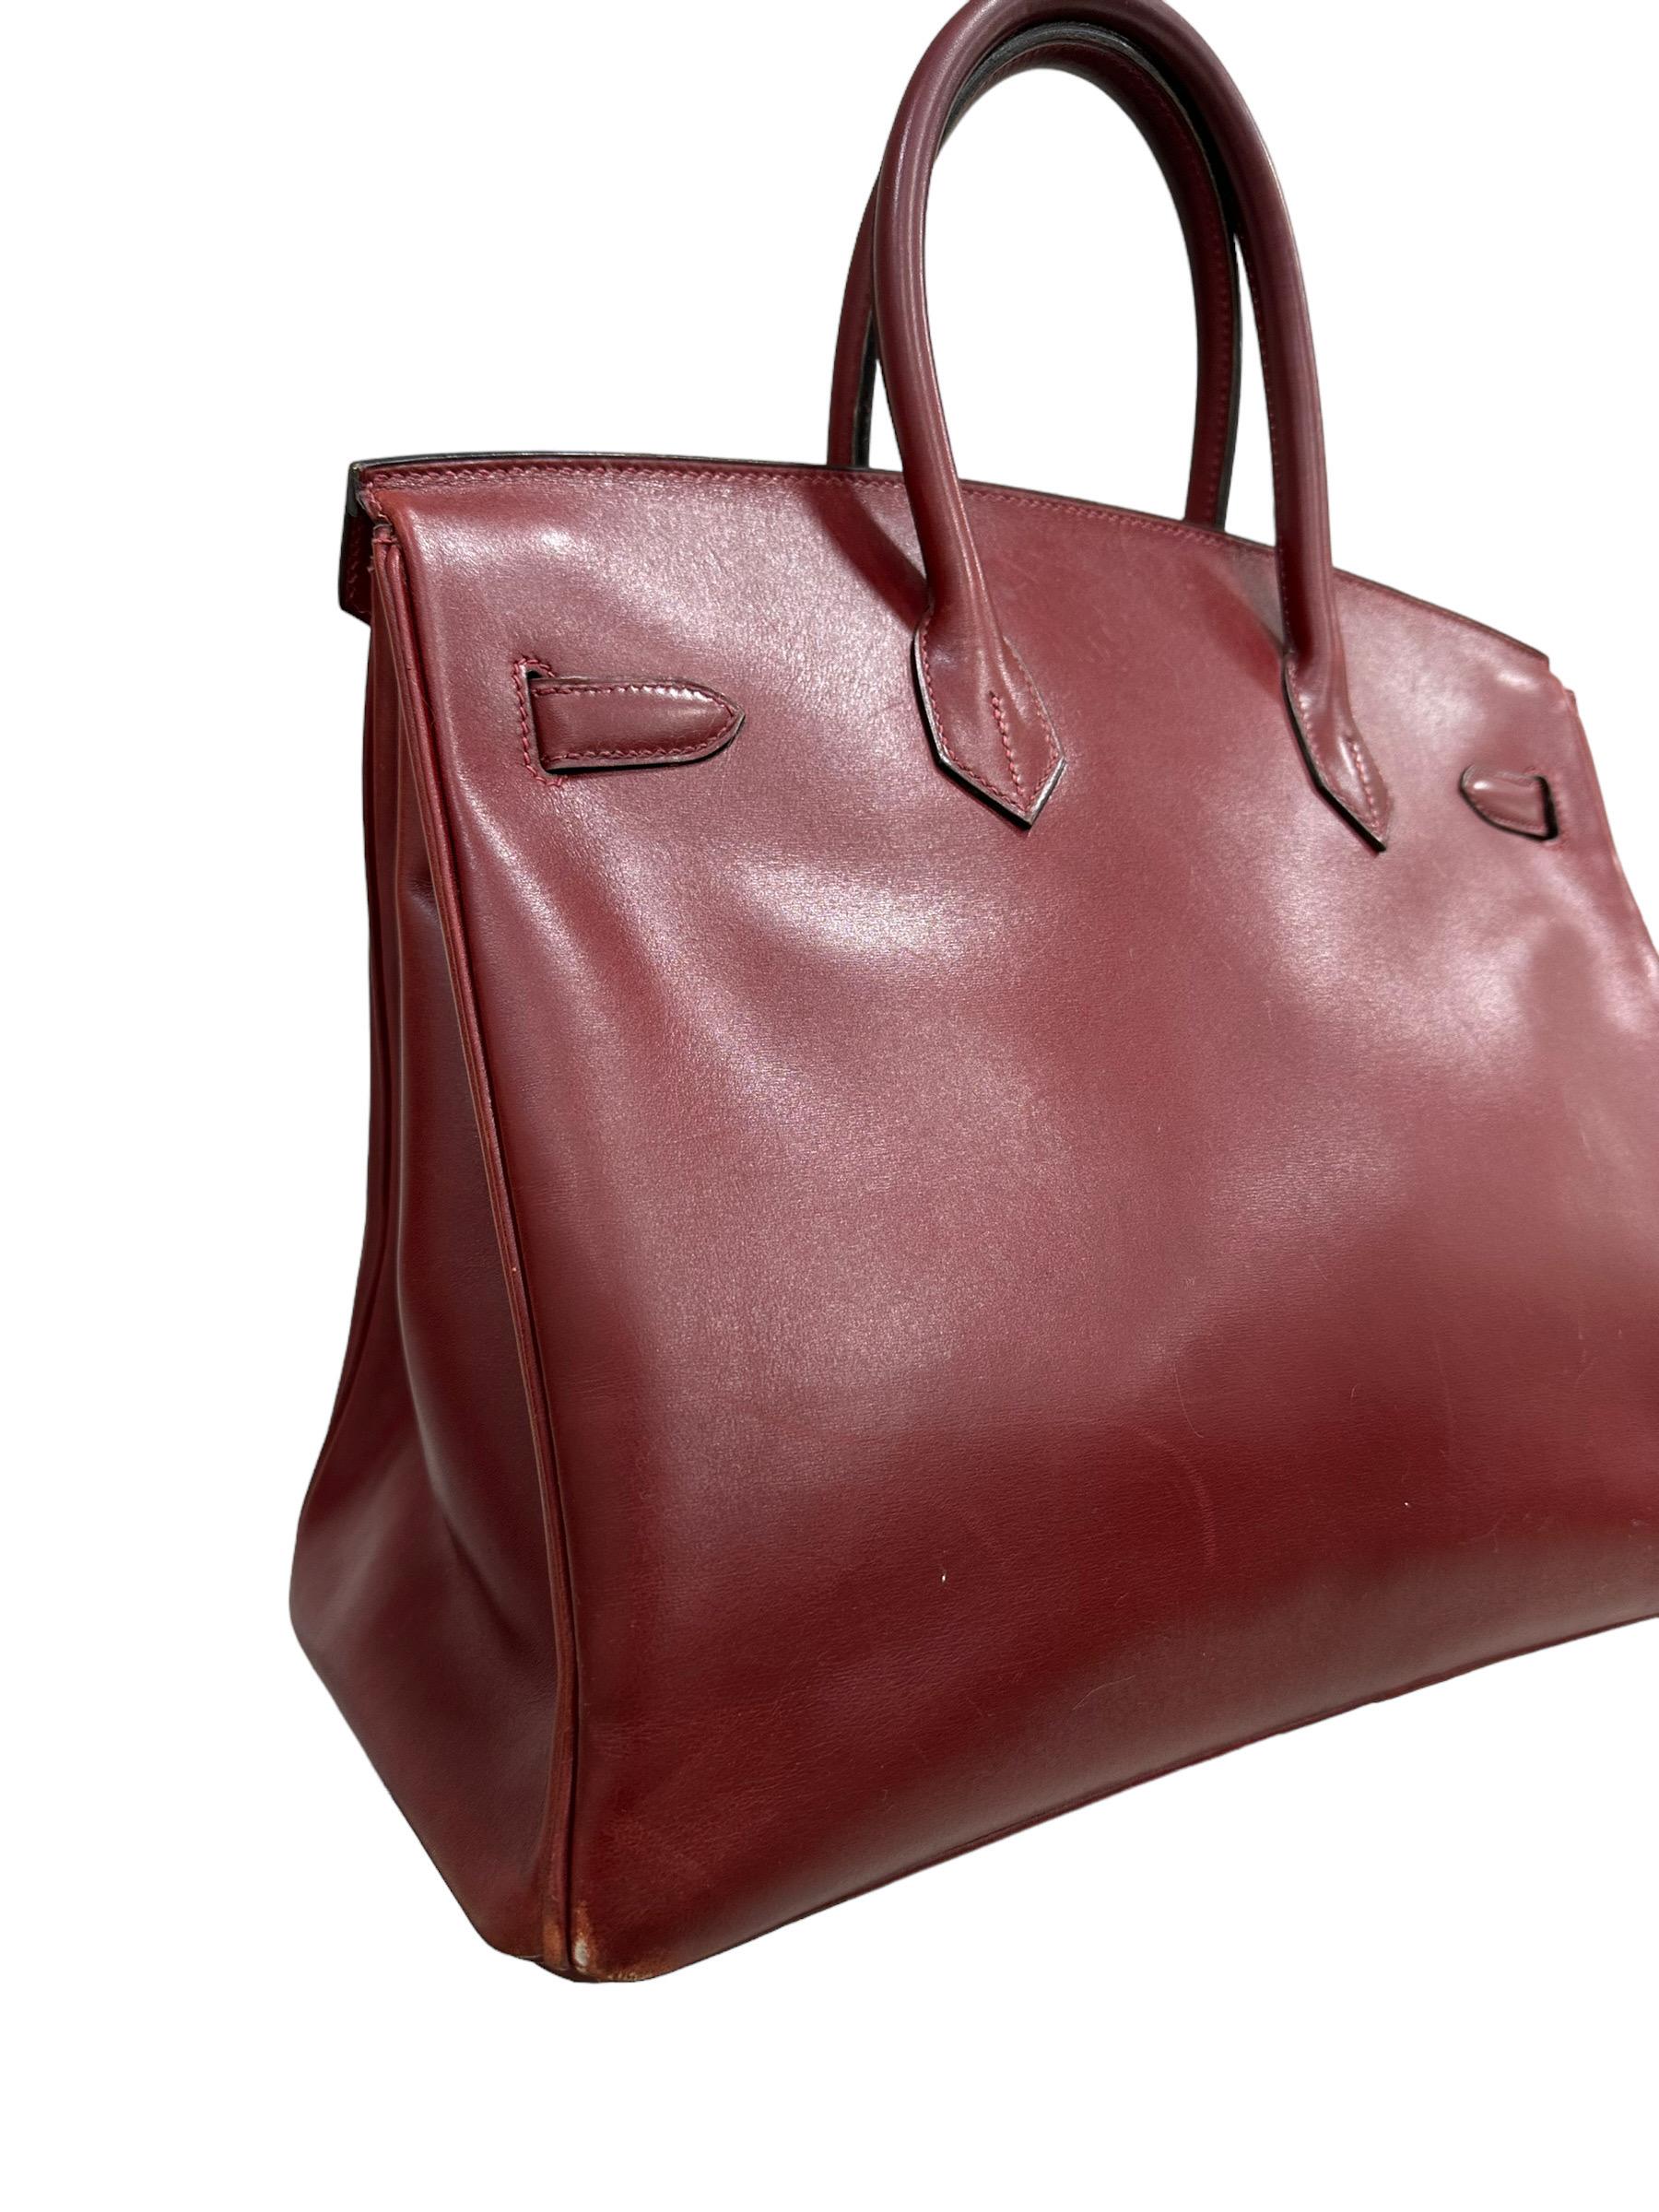 Hermès Birkin 35 Evercalf Rouge Garance Top Handle Bag 7